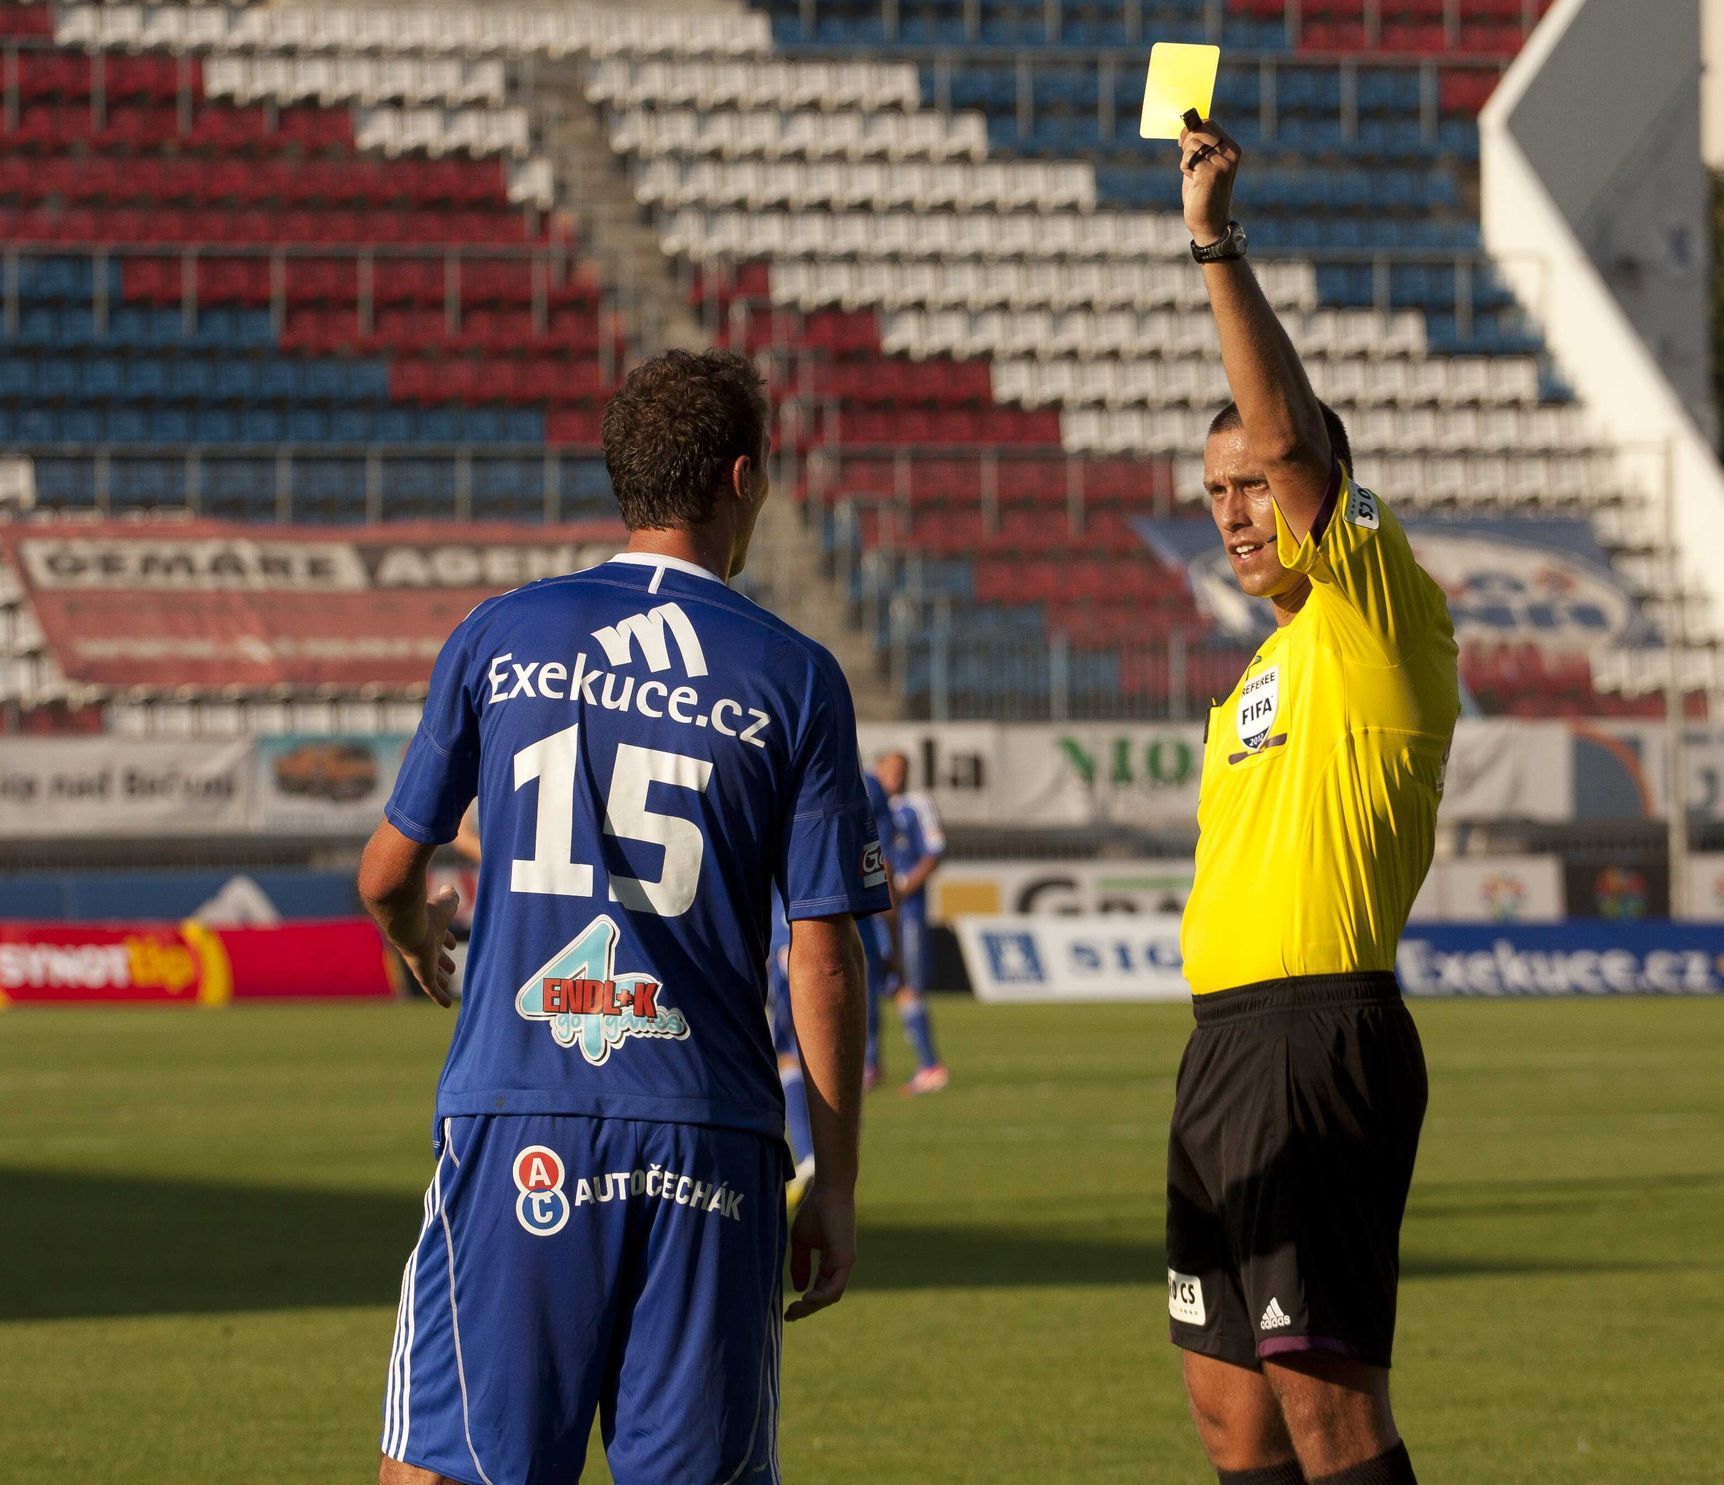 Olomoucký fotbalista Martin Doležal dostal žlutou kartu za simulování v utkání 2. kola Gambrinus ligy se Slováckem.